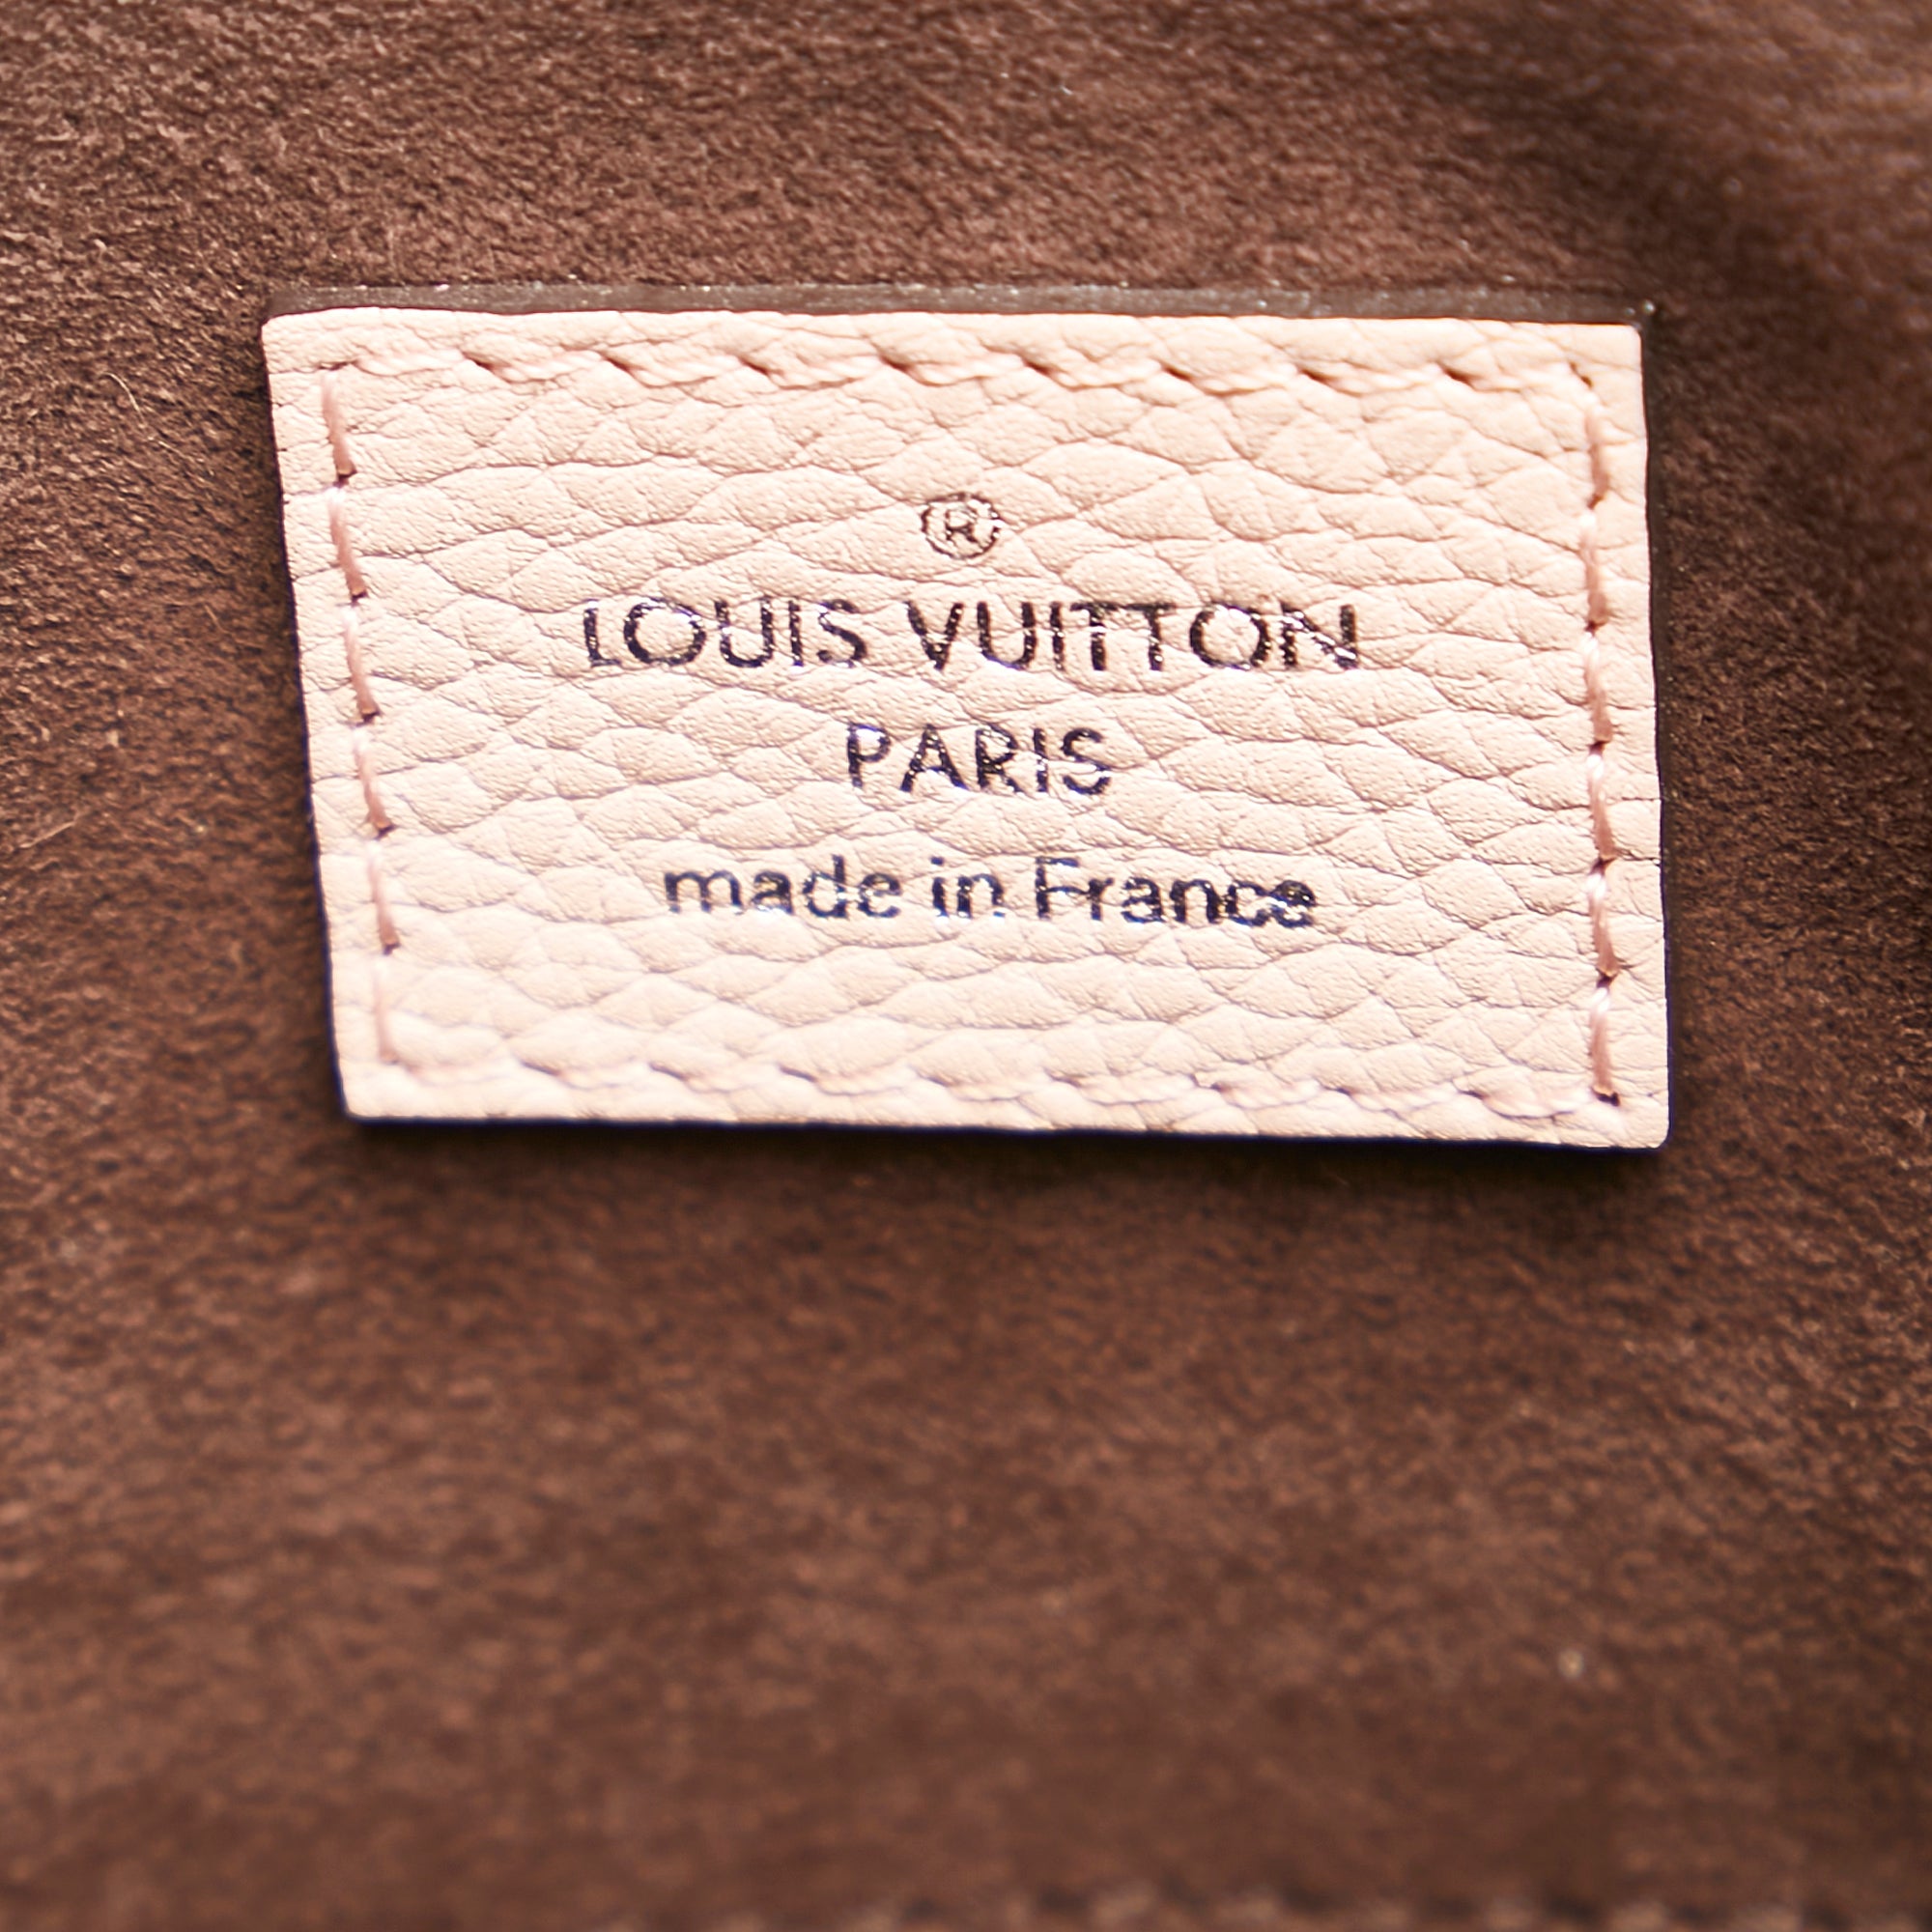 Preloved Louis Vuitton Pink Monogram Mahina Babylone PM AH3195